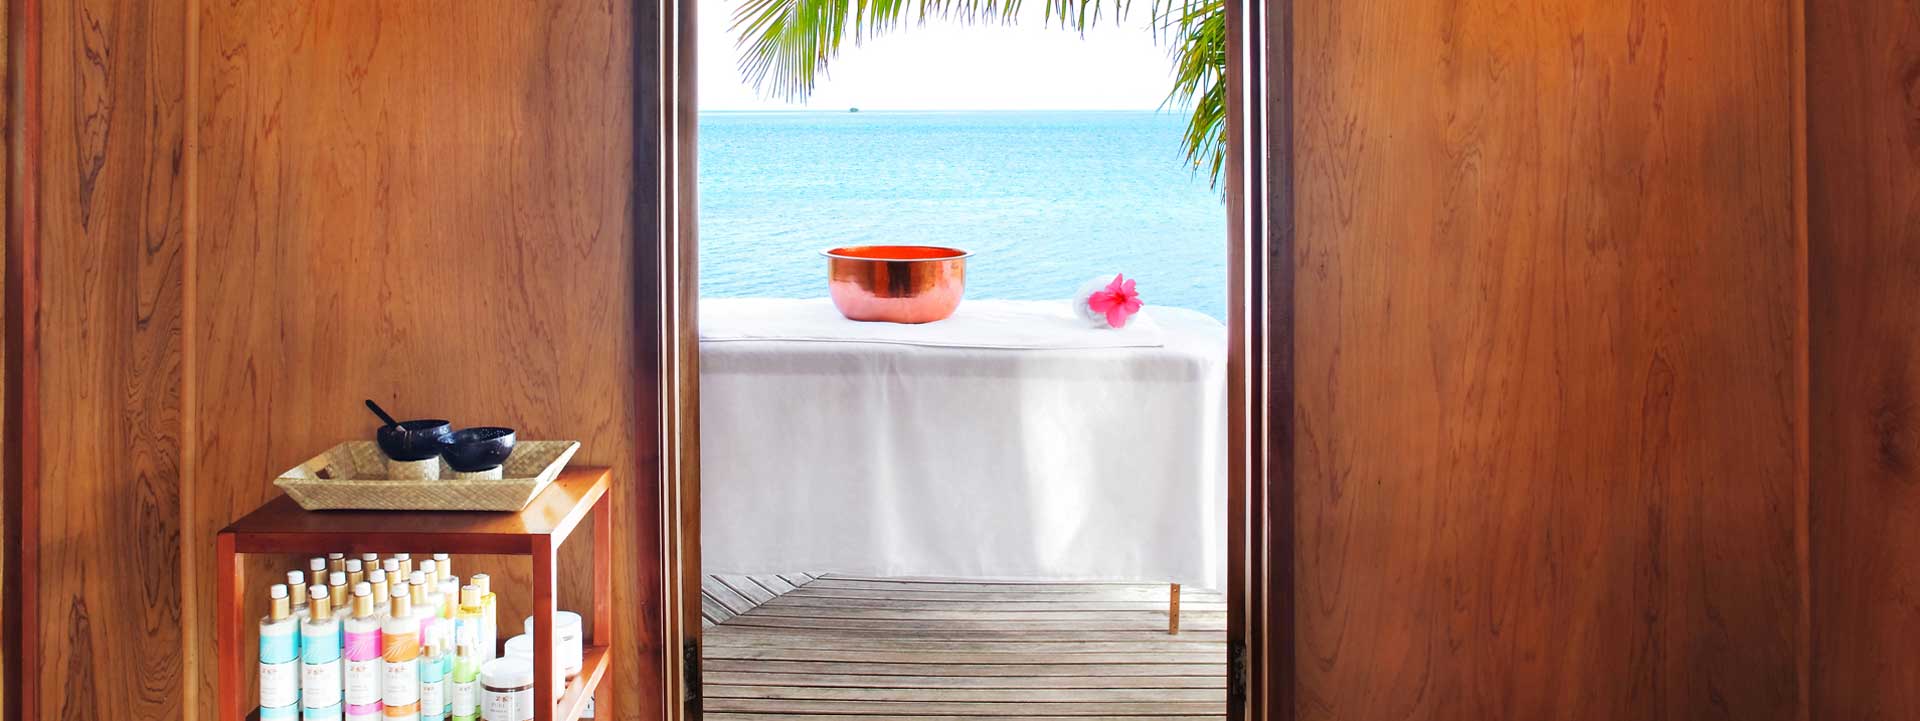 Fiji Resort Spa and Massage